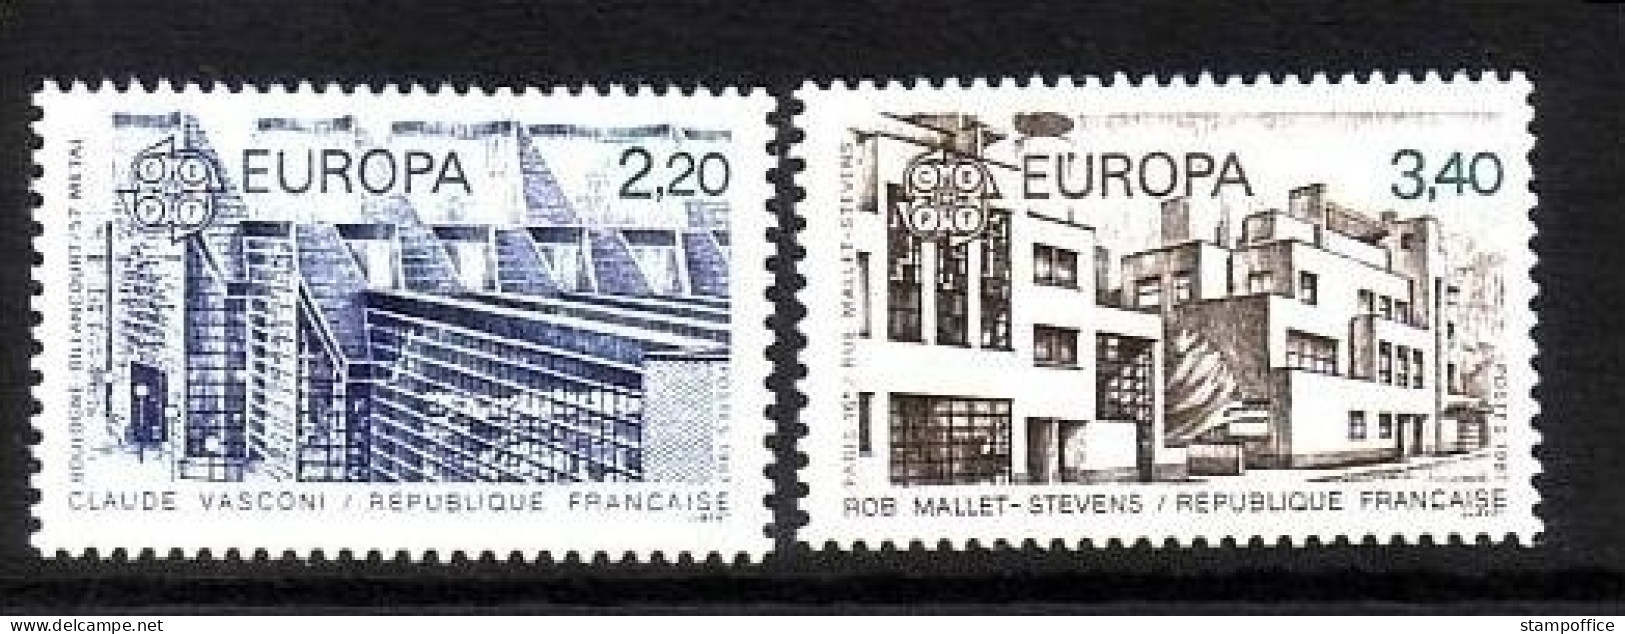 FRANKREICH MI-NR. 2603-2604 POSTFRISCH EUROPA 1987 - MODERNE ARCHITEKTUR - 1987